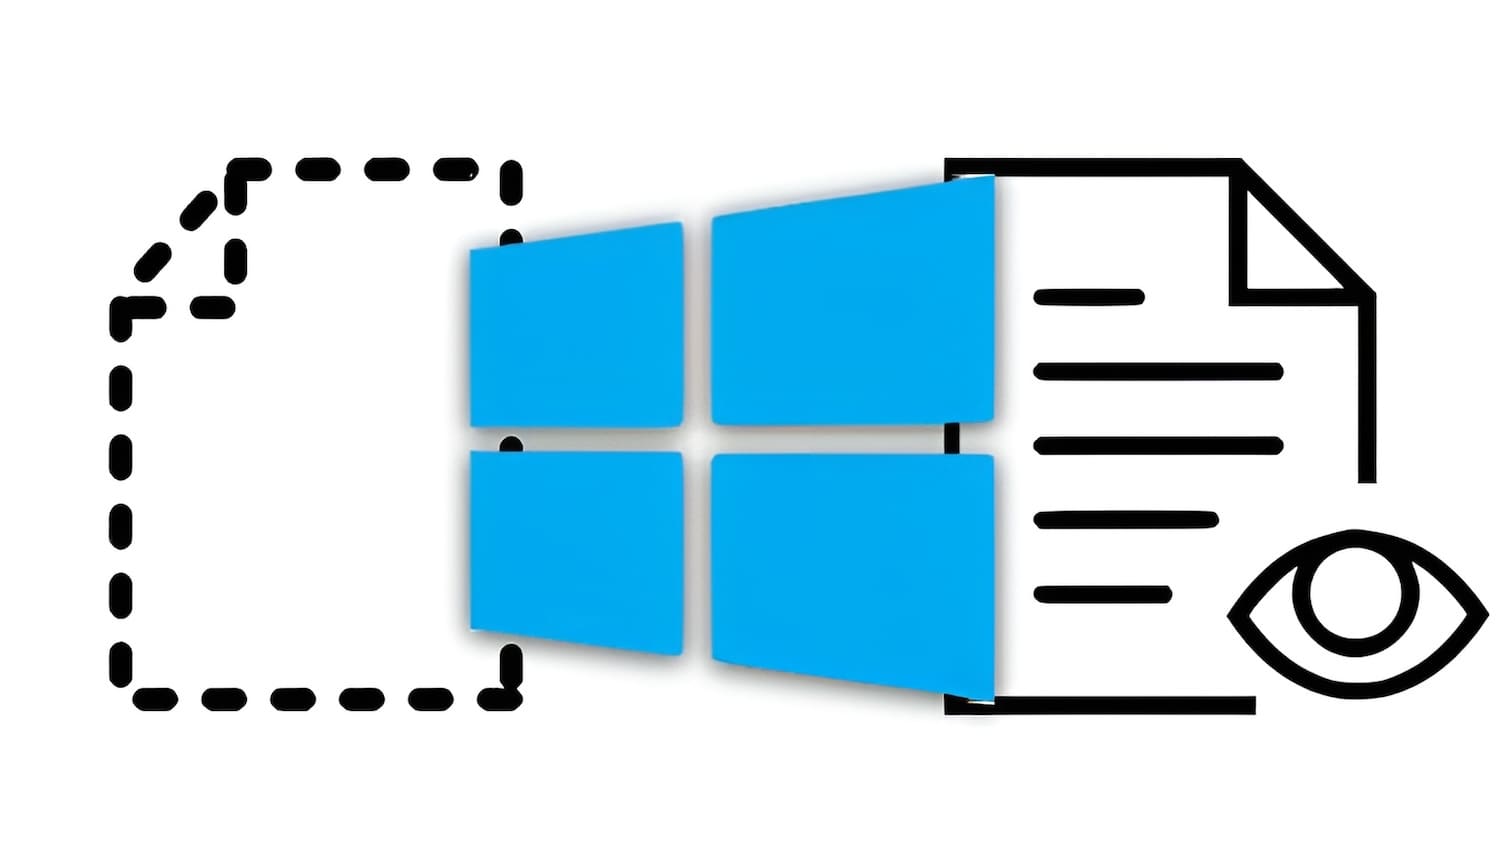 Скрытые папки и файлы в Windows: как скрыть (показать) фото, видео, документы, диски